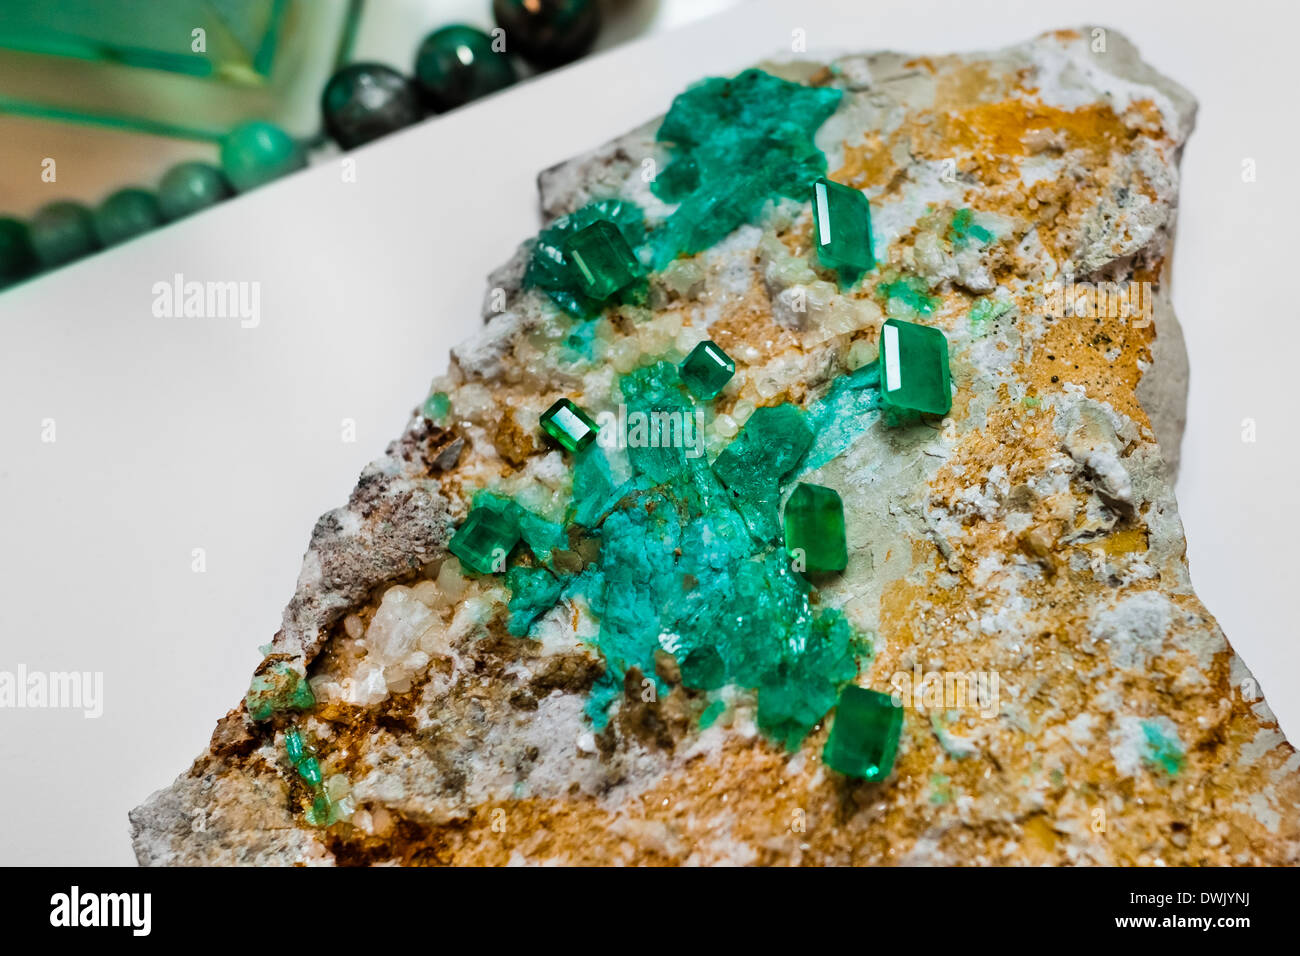 Piedra preciosa esmeralda fotografías e imágenes de - Alamy